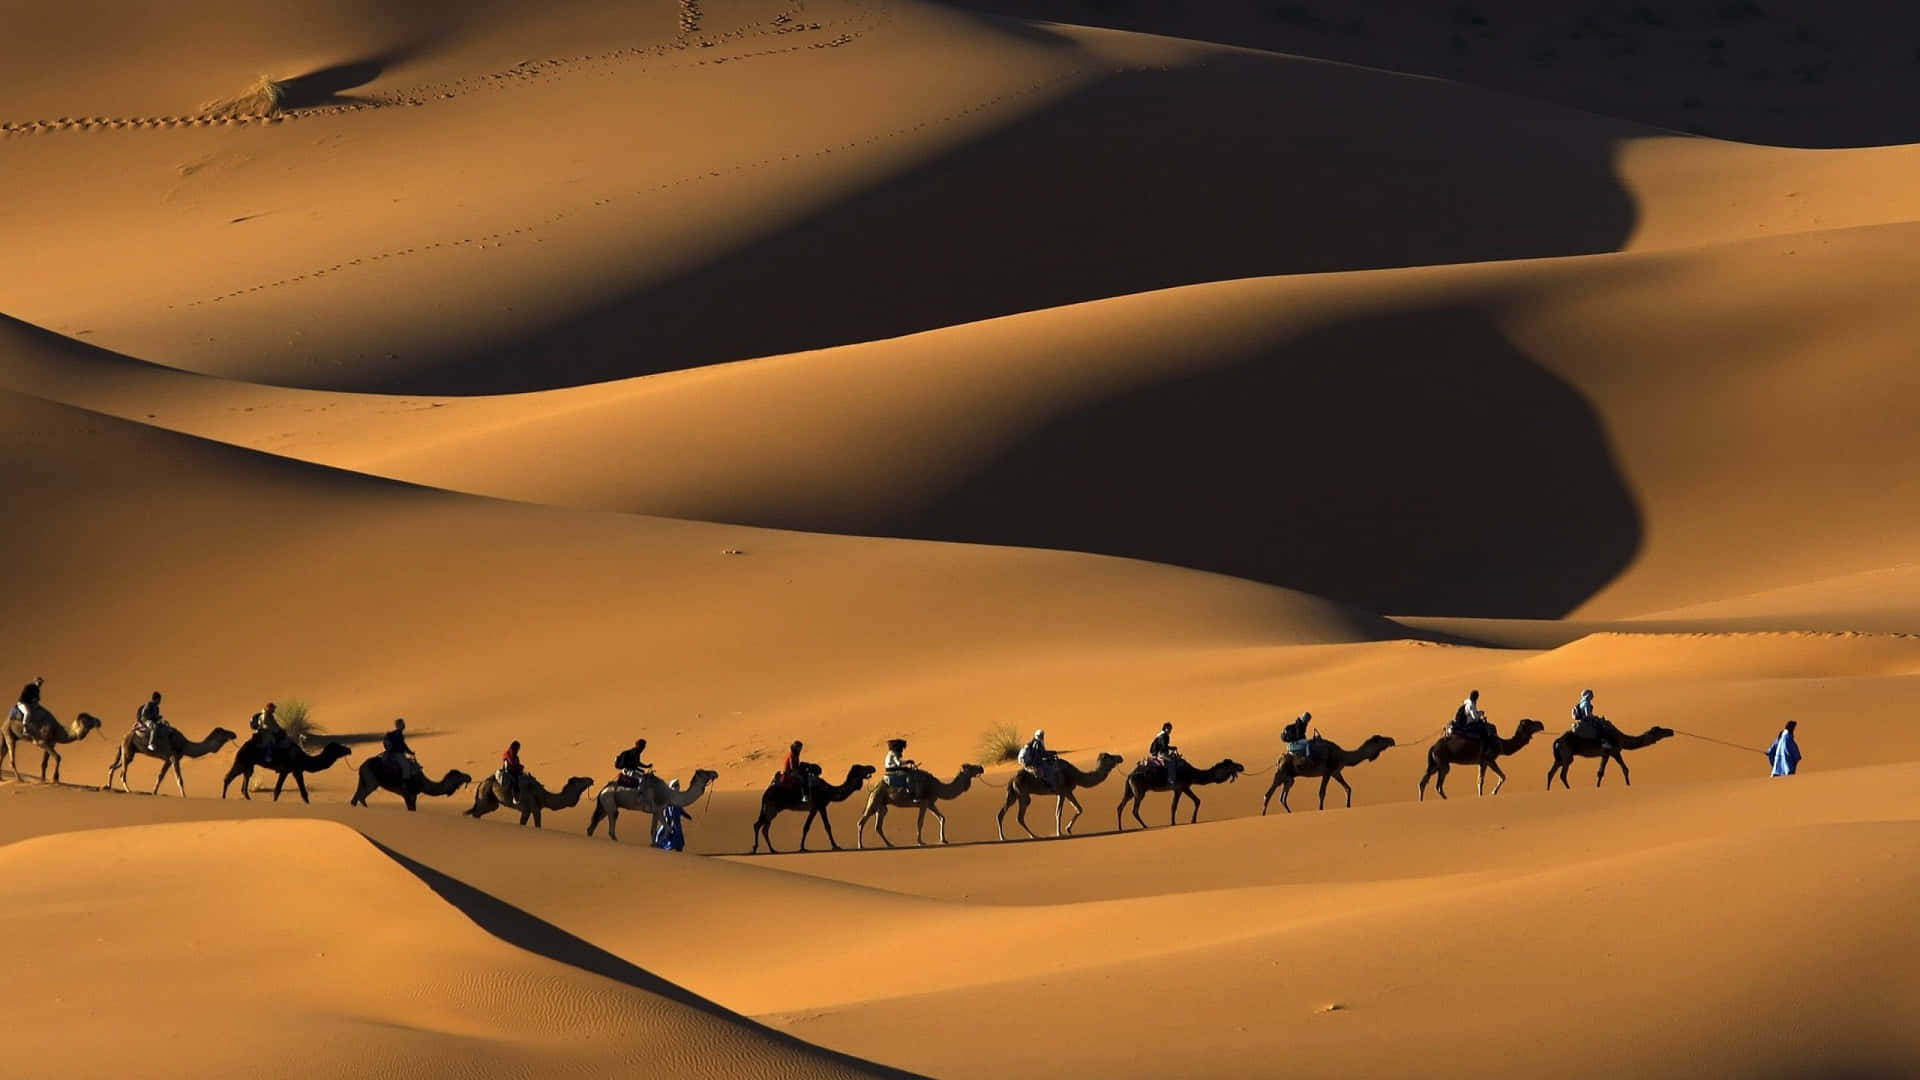 Einbild Von Einem Majestätischen Kamel, Das In Einer Sandigen Wüste Steht.